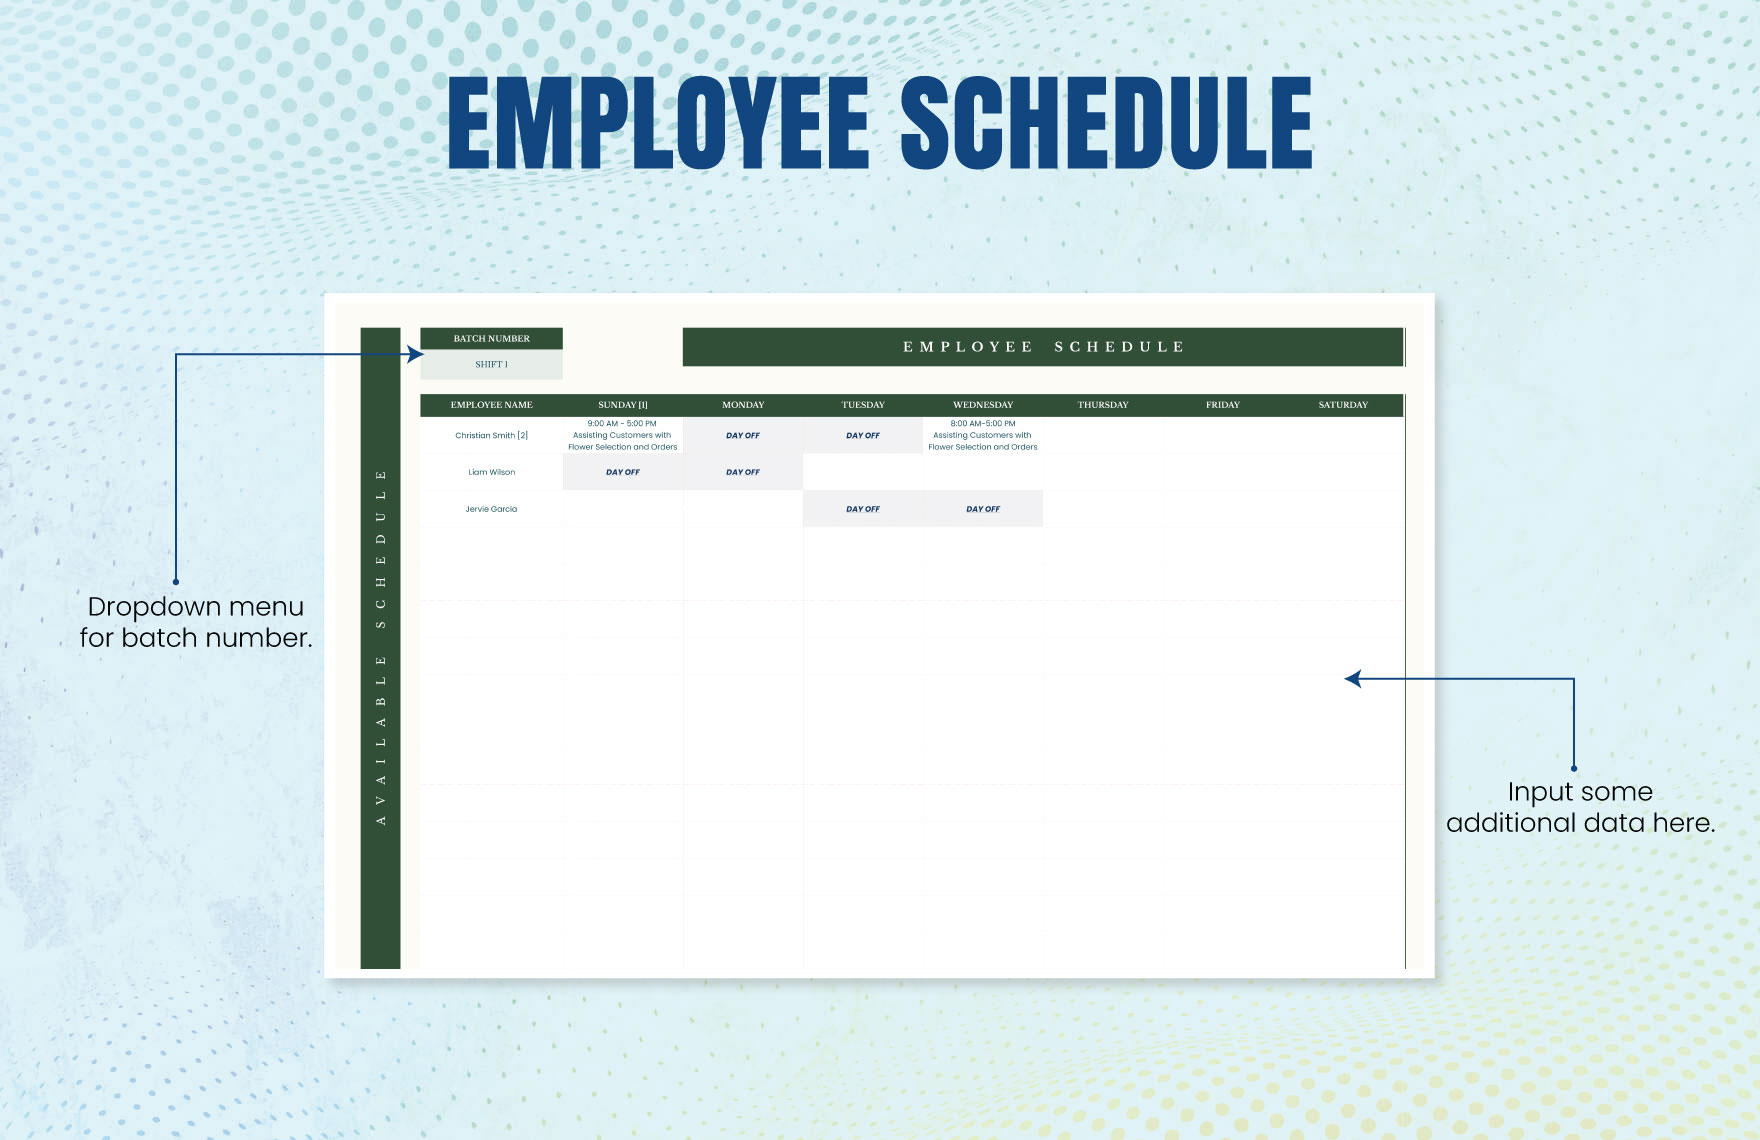 Employee Schedule Template